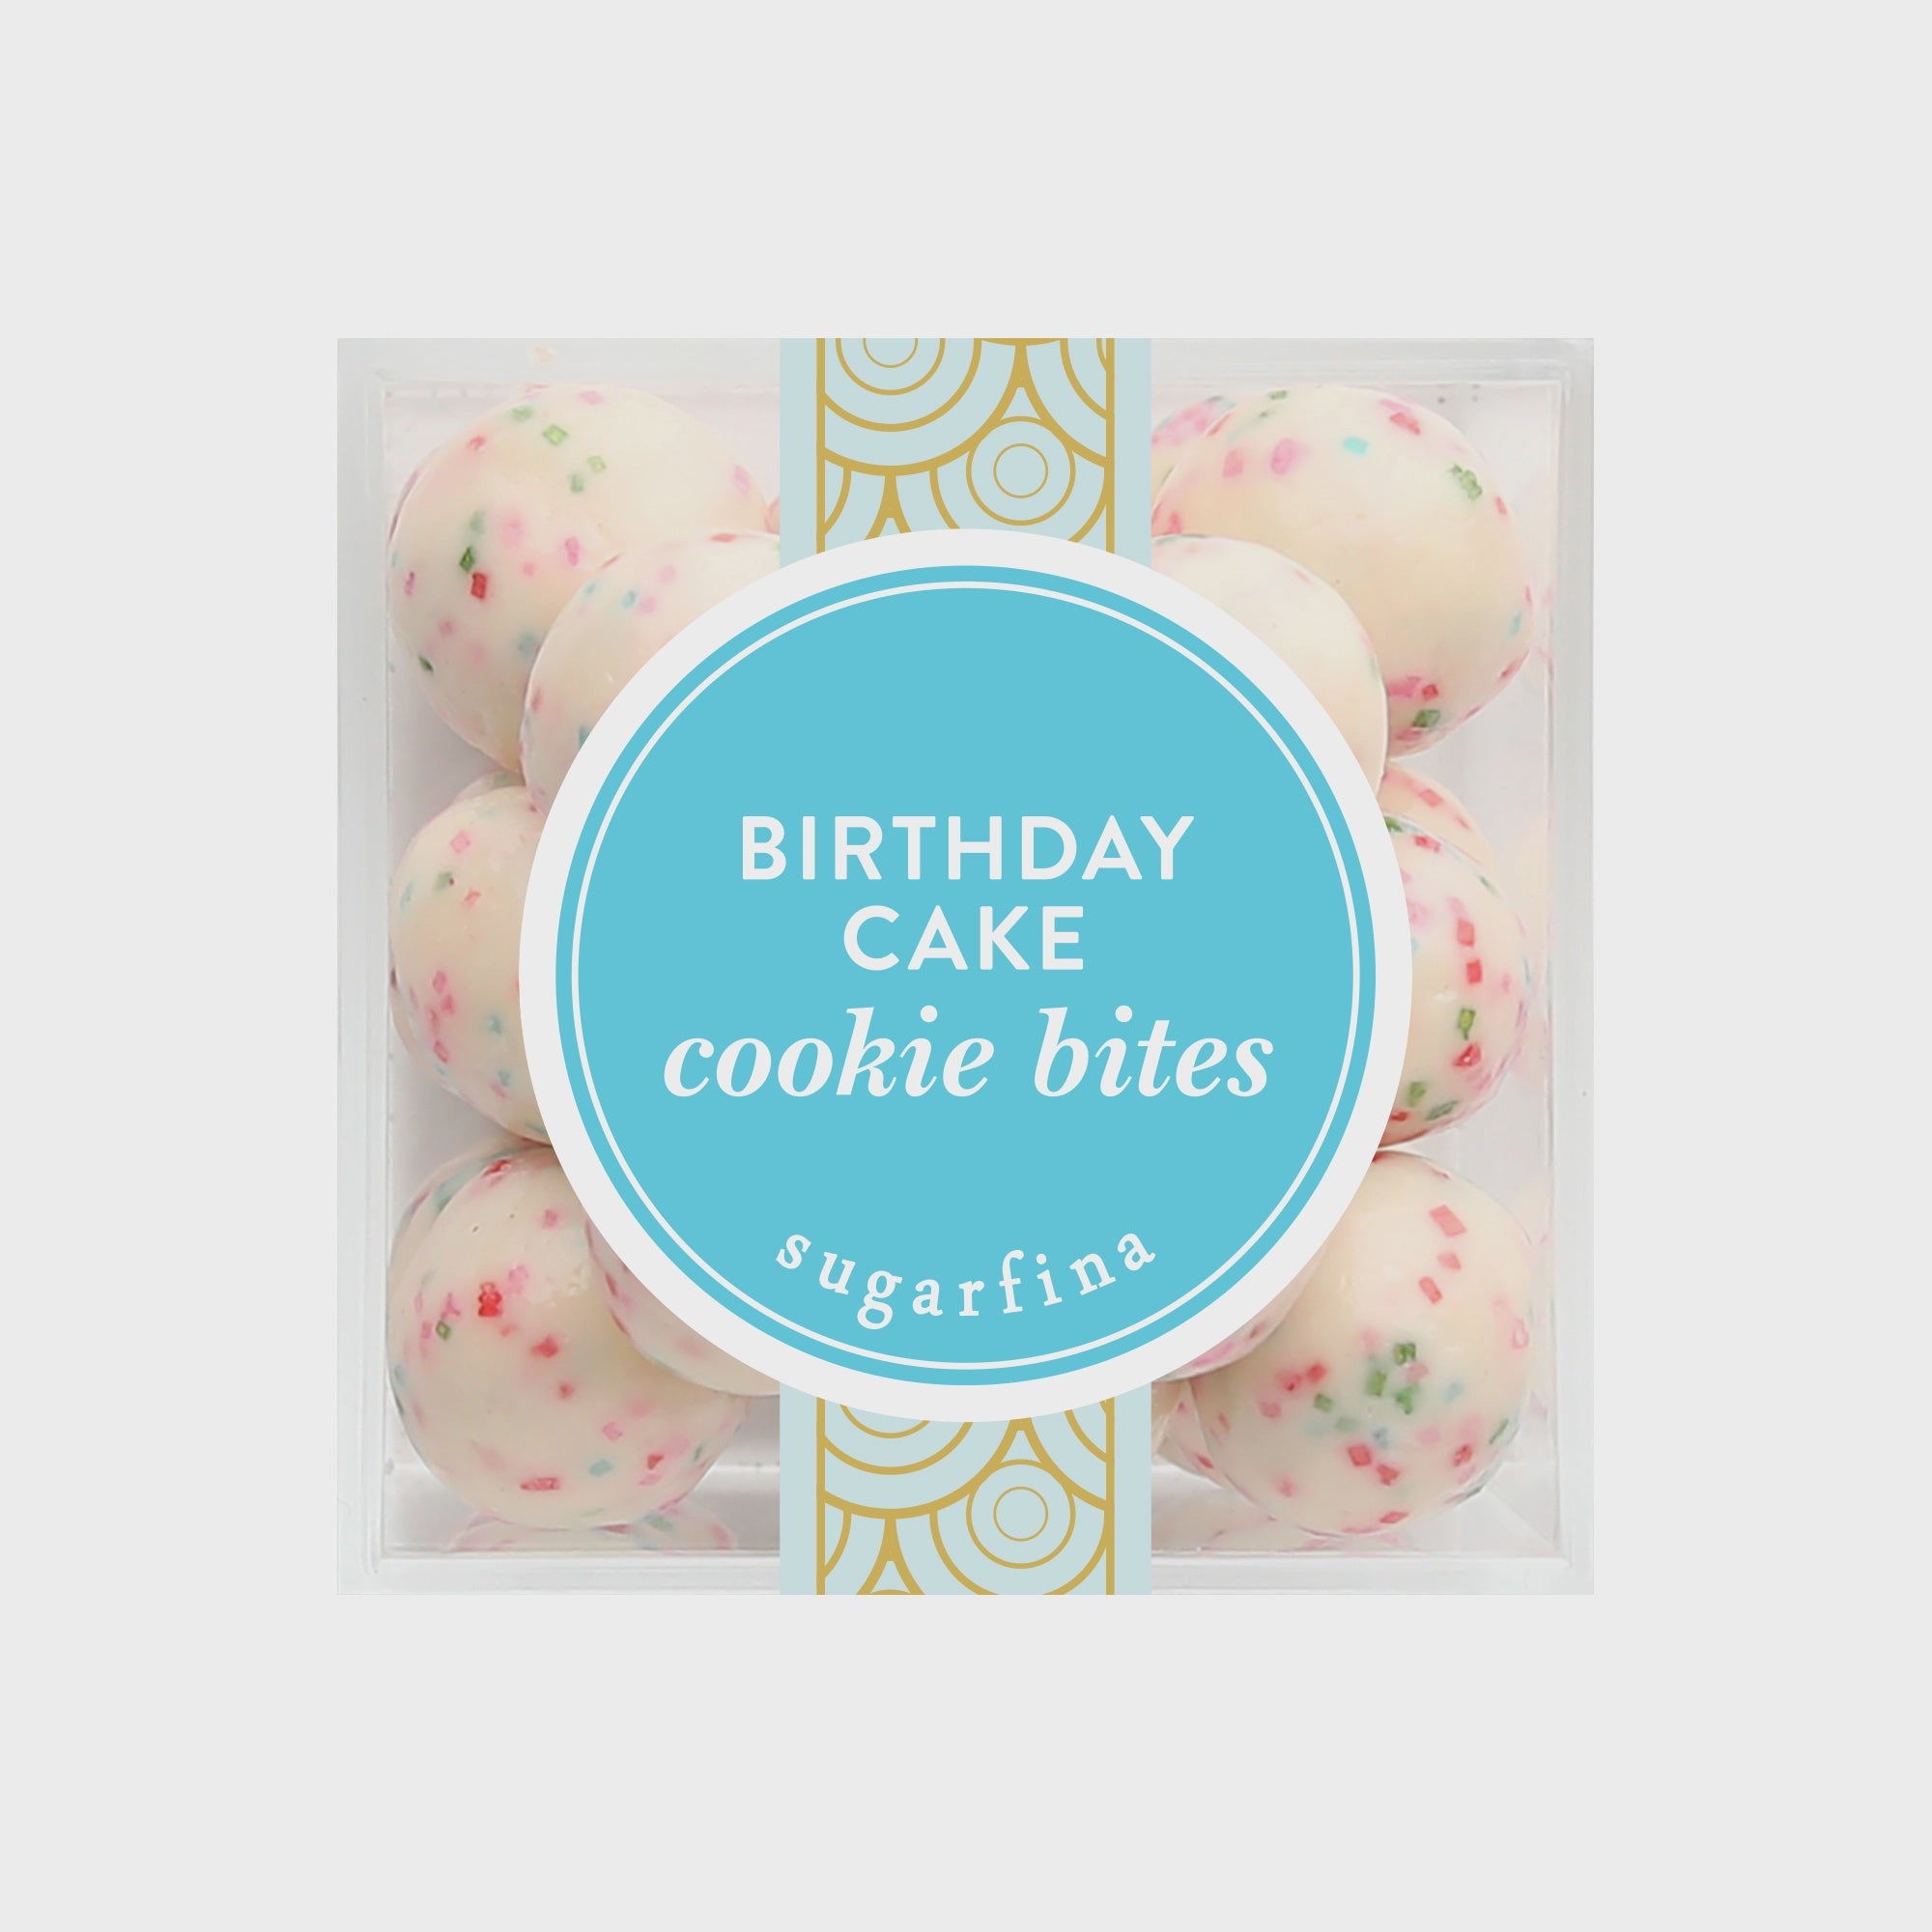 Birthday Cake Cookie Bites by Sugarfina